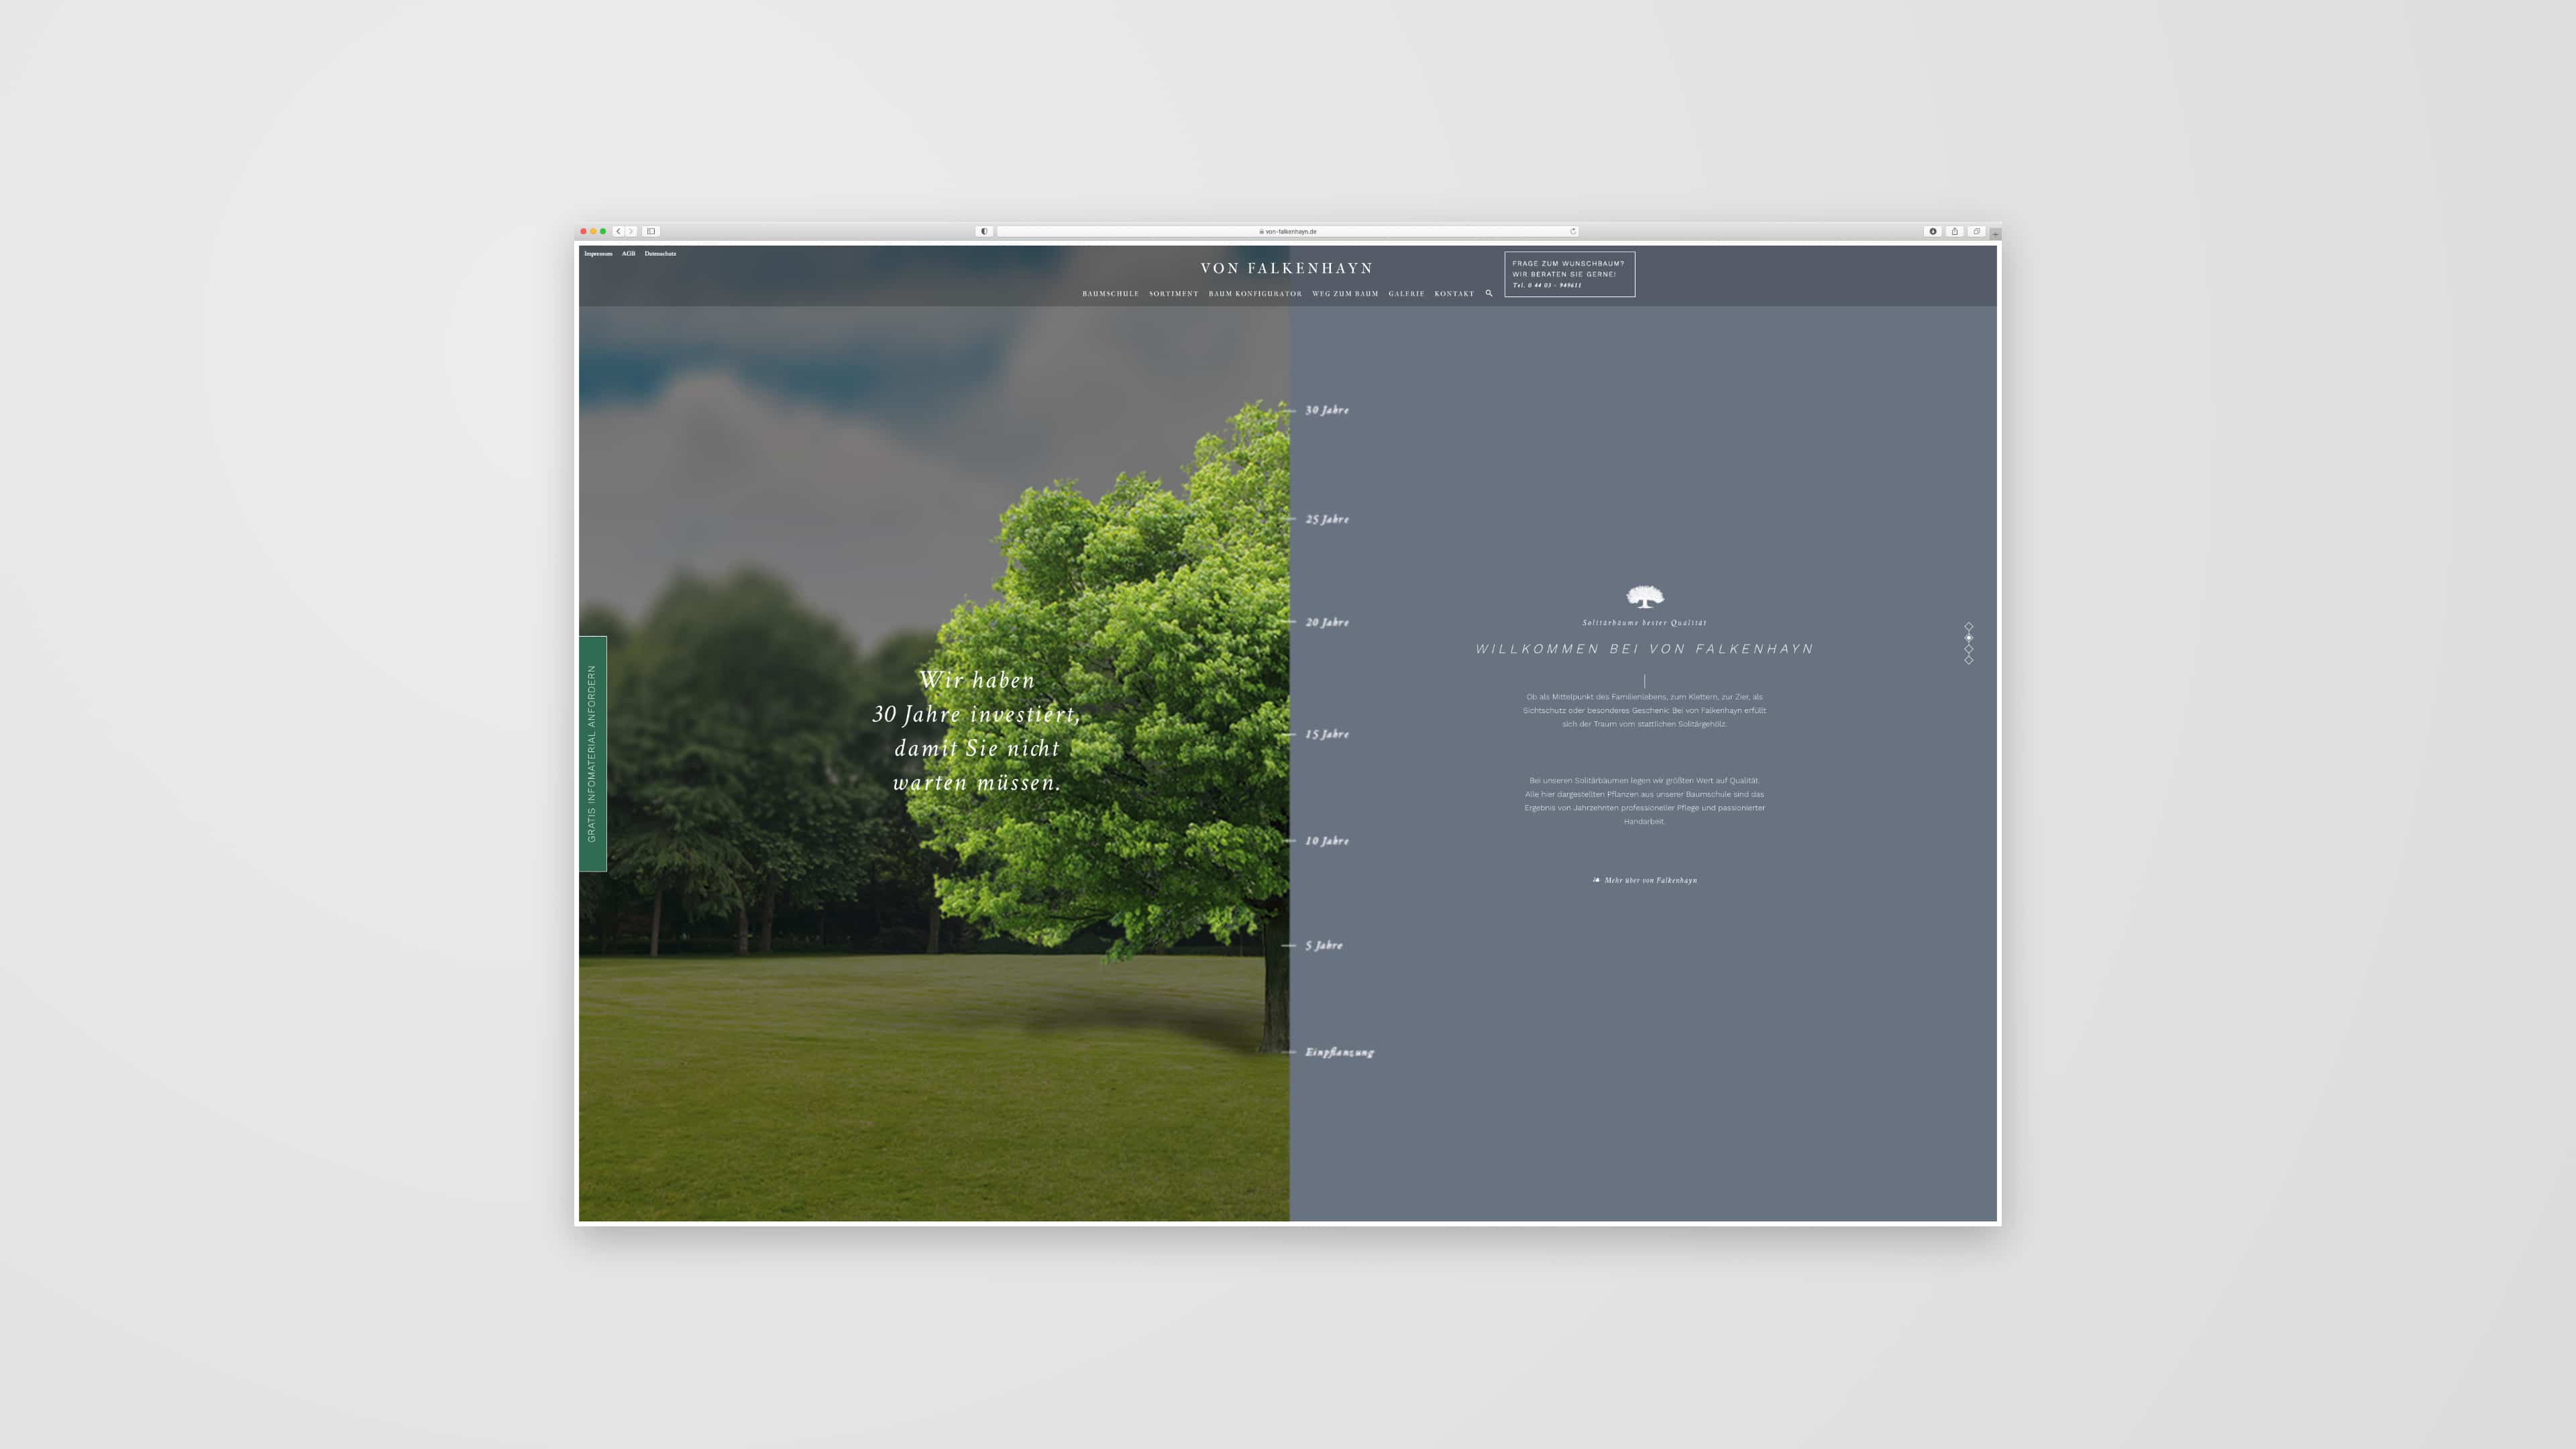 Screendesign von der Homepage von Falkenhayn mit grünem Baum